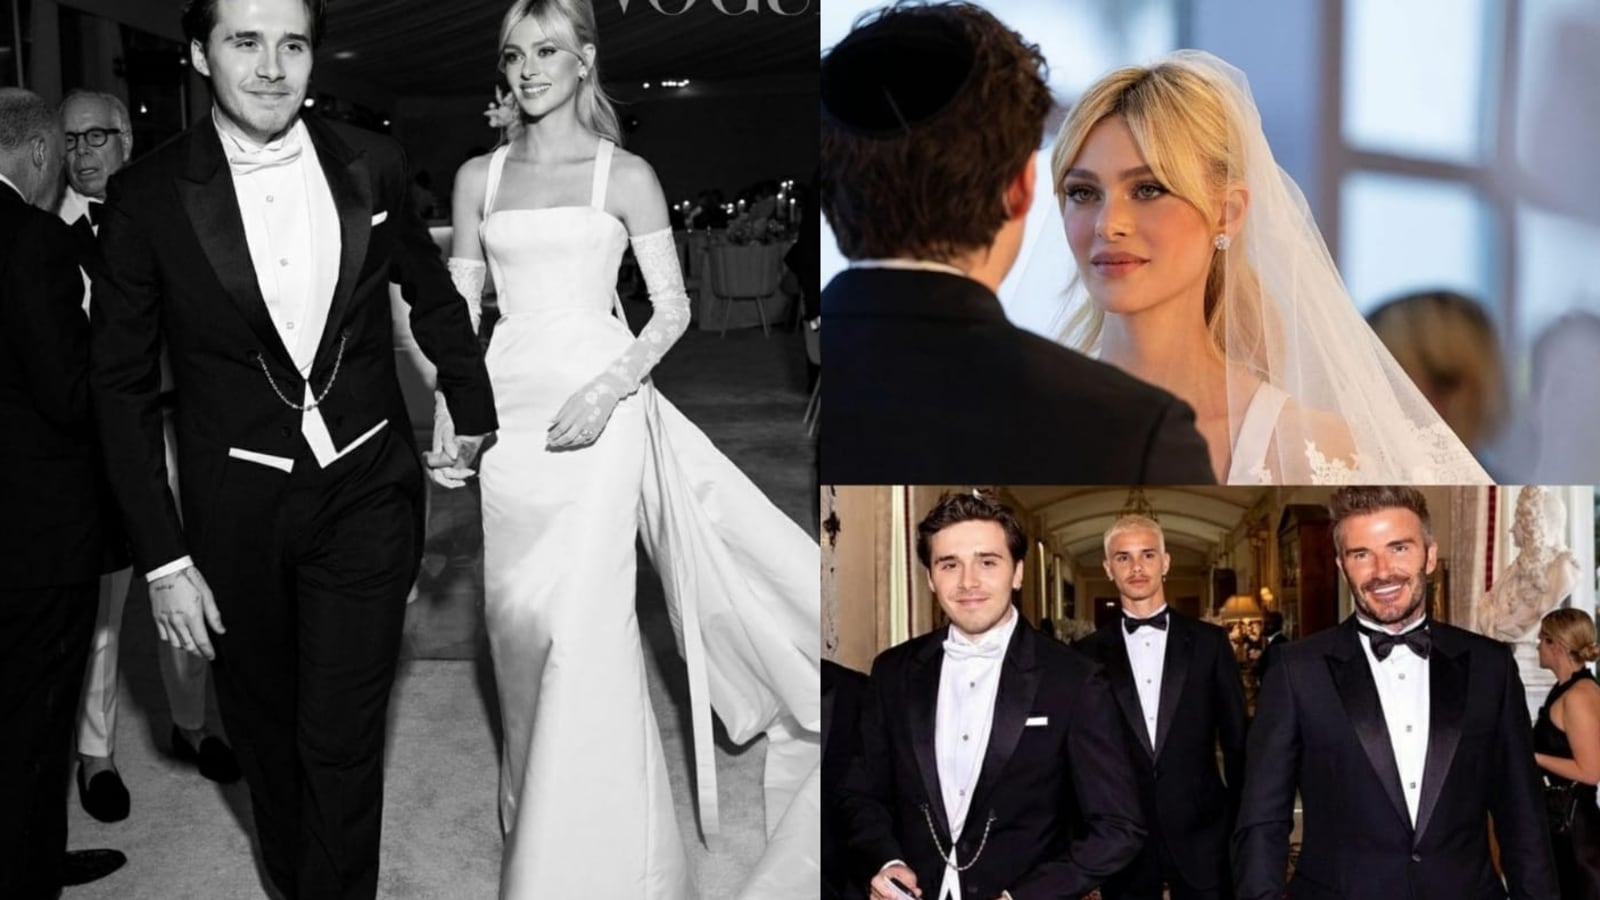 David Beckham-Victoria Beckham's son Brooklyn marries actor Nicola